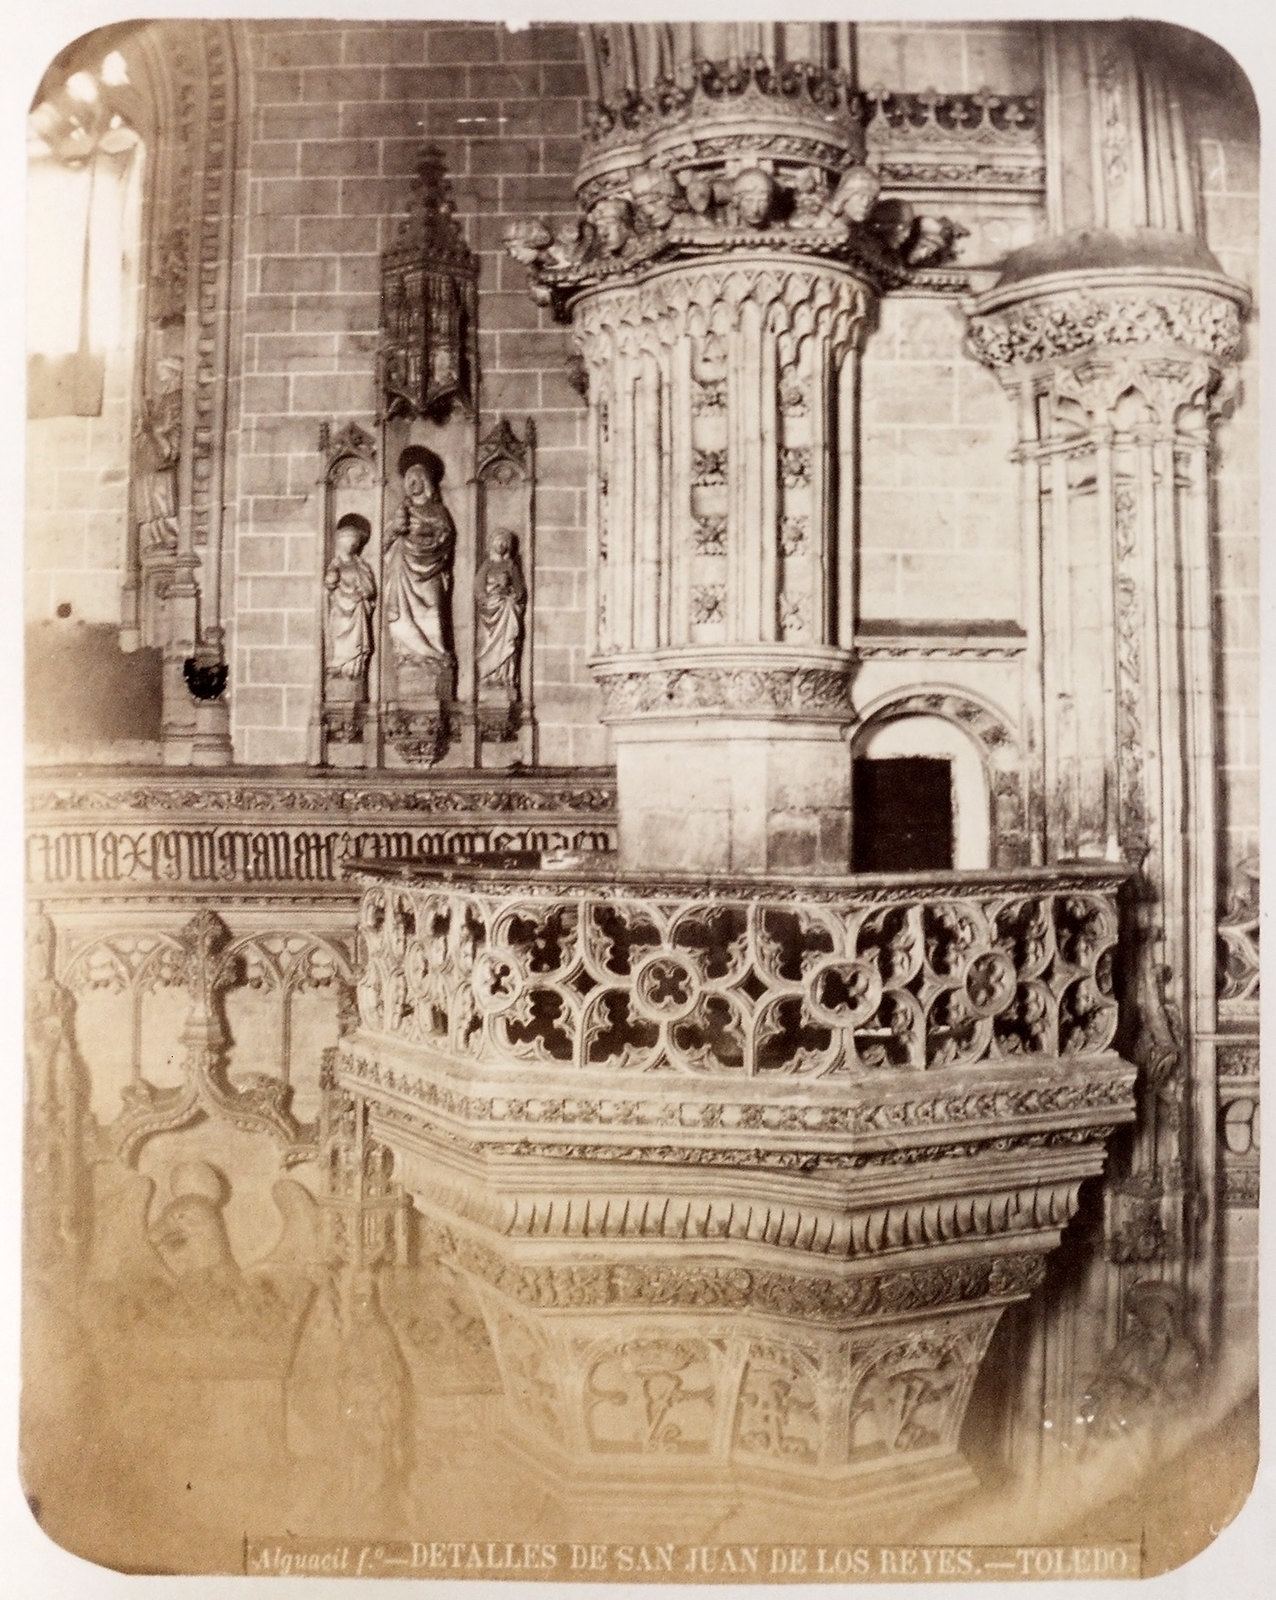 San Juan de los Reyes en Toledo hacia 1879. Álbum de la National Gallery con fotos de Casiano Alguacil.